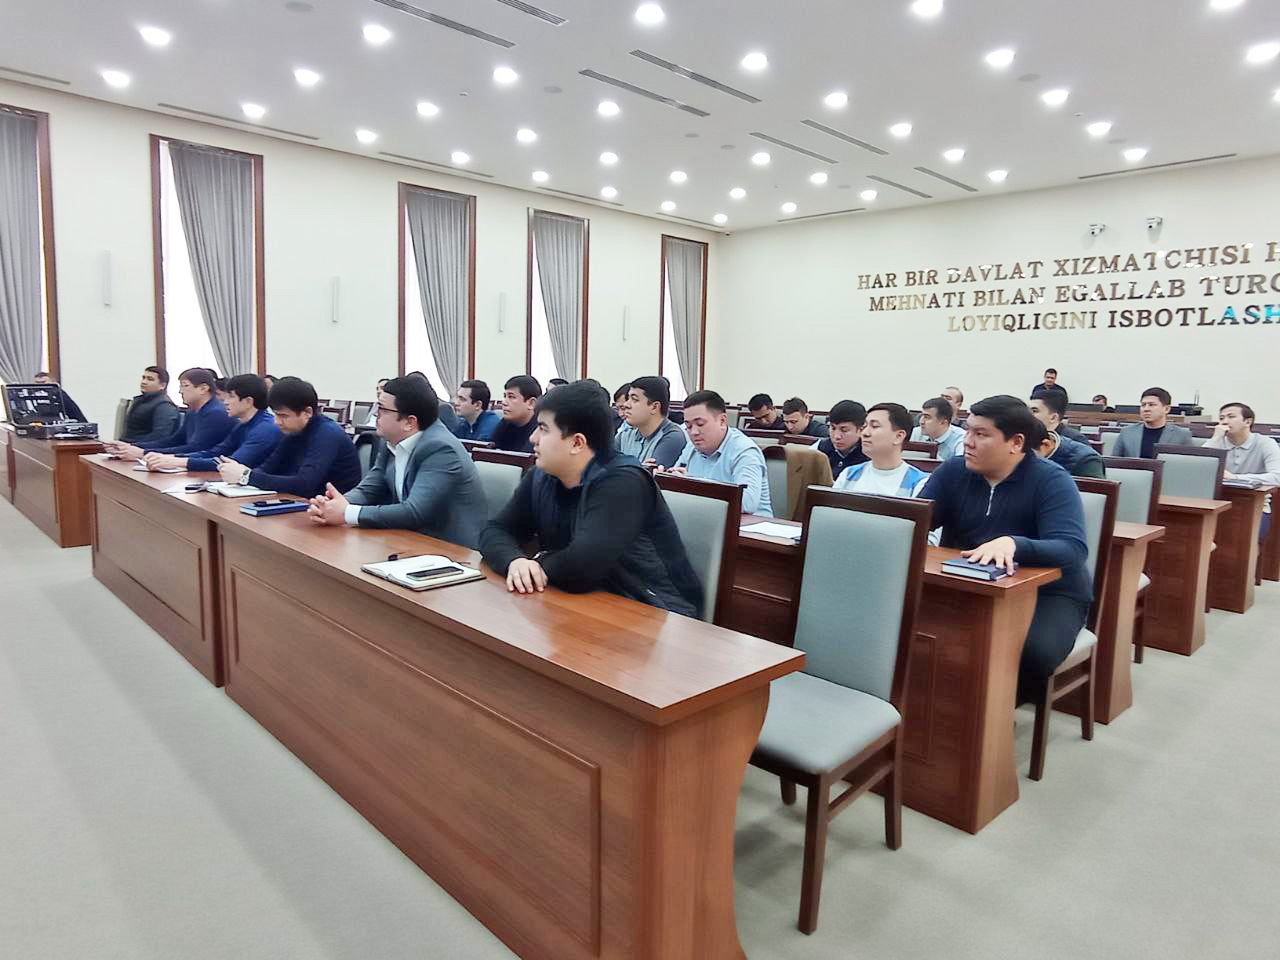 Сотрудниками ЭКЦ ГУВД Ташкента организовываются научно-практические семинары